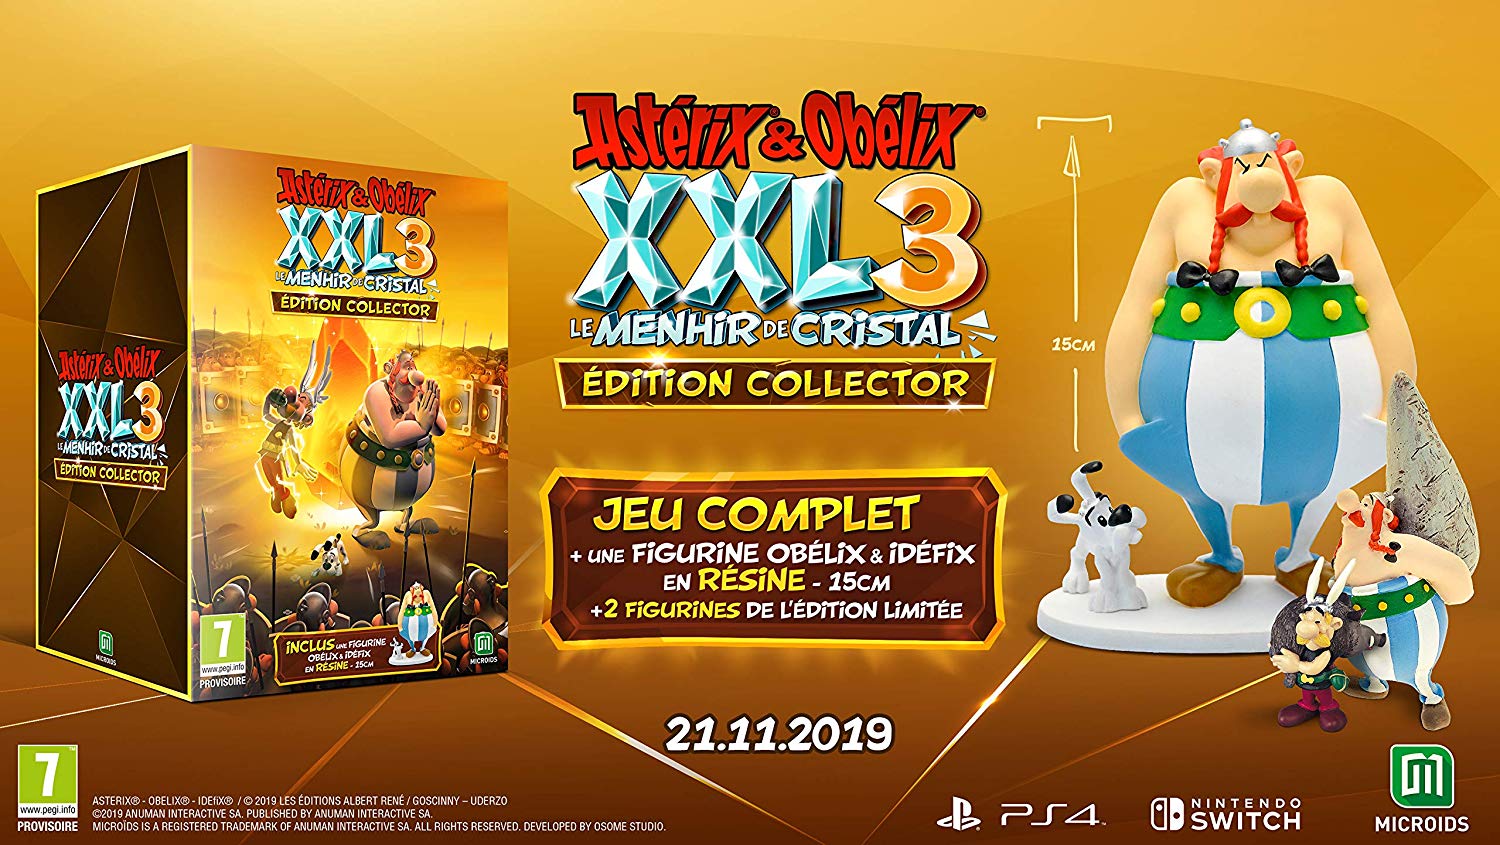 Asterix & Obelix XXL 3: The Crystal Menhir menghantam Eropa pada 21 November 2019, Edisi Kolektor diungkap